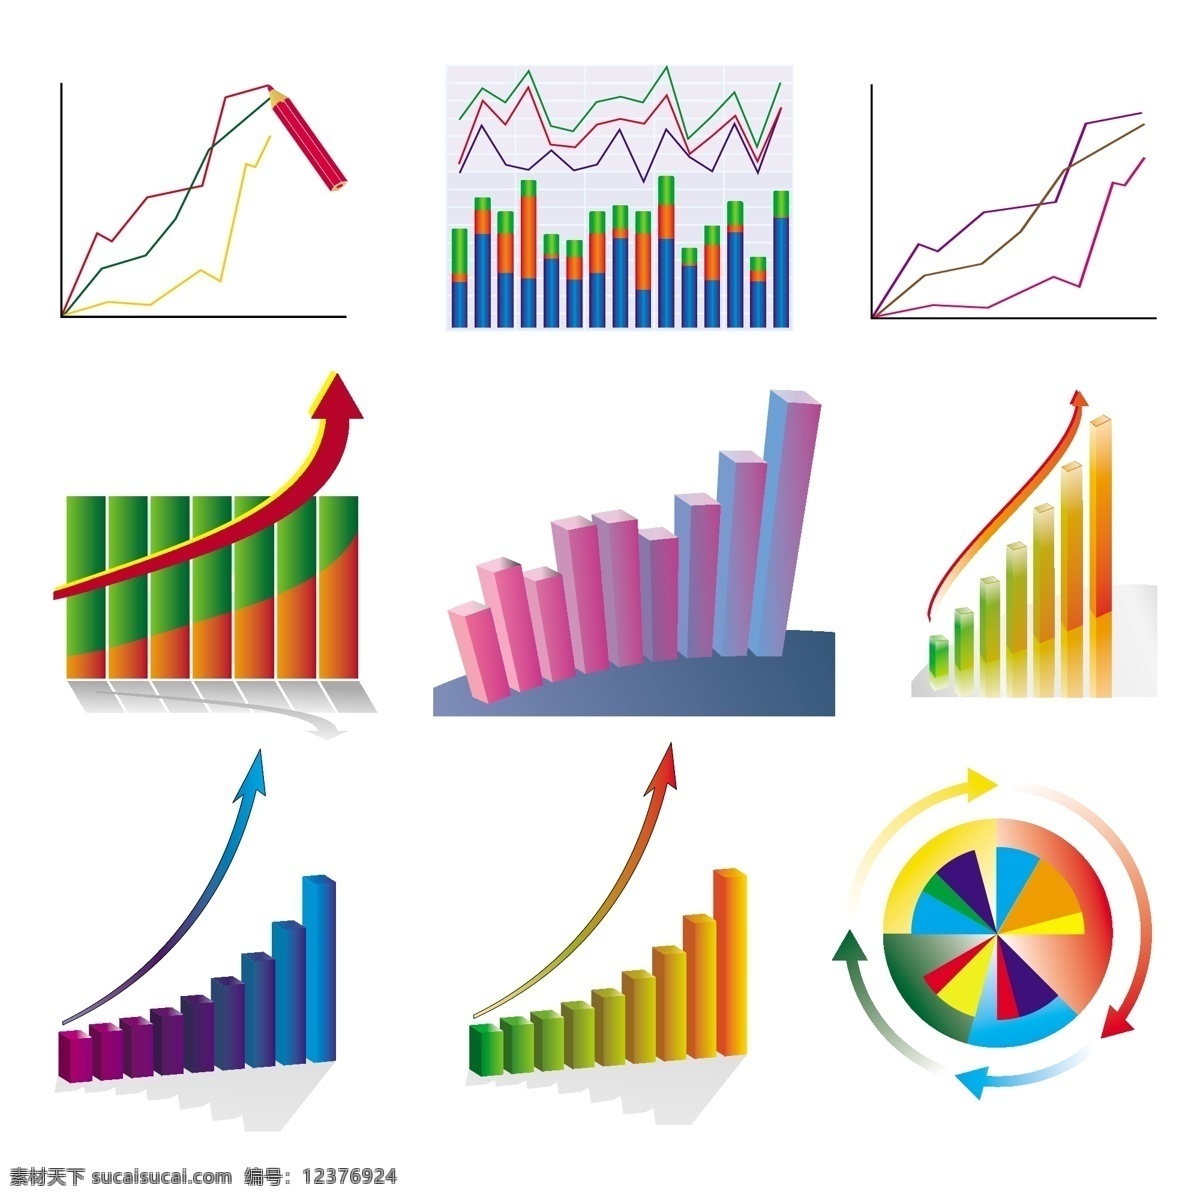 分析 统计 趋势 图 箭头 数据 财务 理财 报表 分布图 统计图 走势 图表 示意图 金融 分布 概率 商务金融 商业插画 矢量